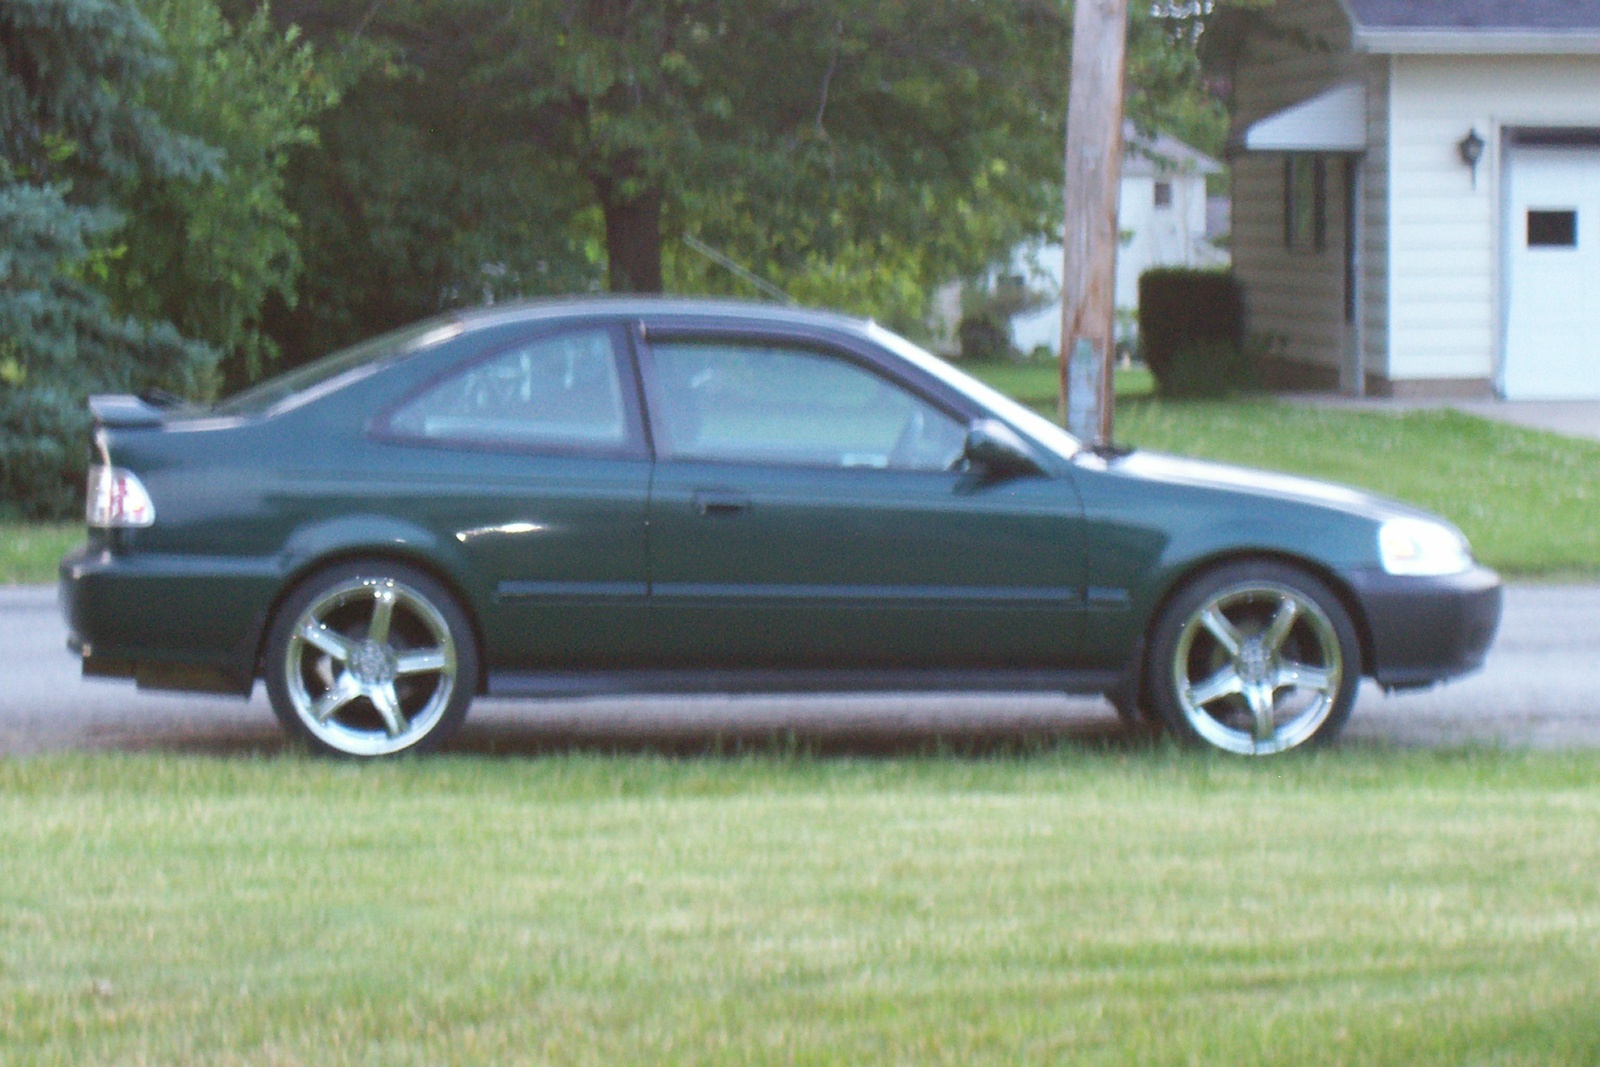 2000 Honda Civic EX Coupe picture, exterior